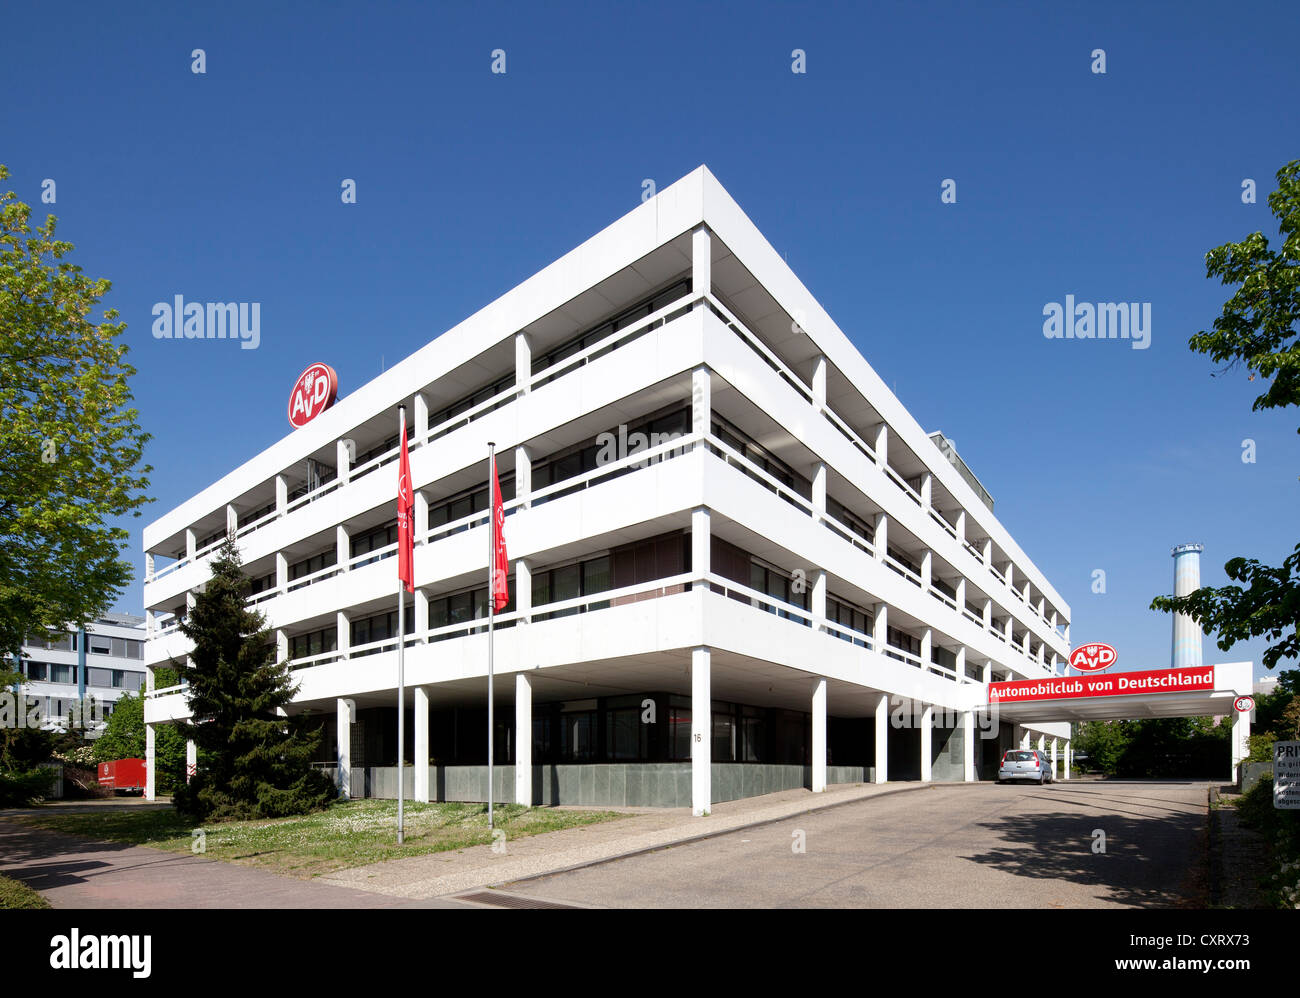 AvD Gebäude, ein Automobilclub von Deutschland, Gewerbegebiet Buerostadt Niederrad, am Frankfurt Main, Hessen, PublicGround Stockfoto